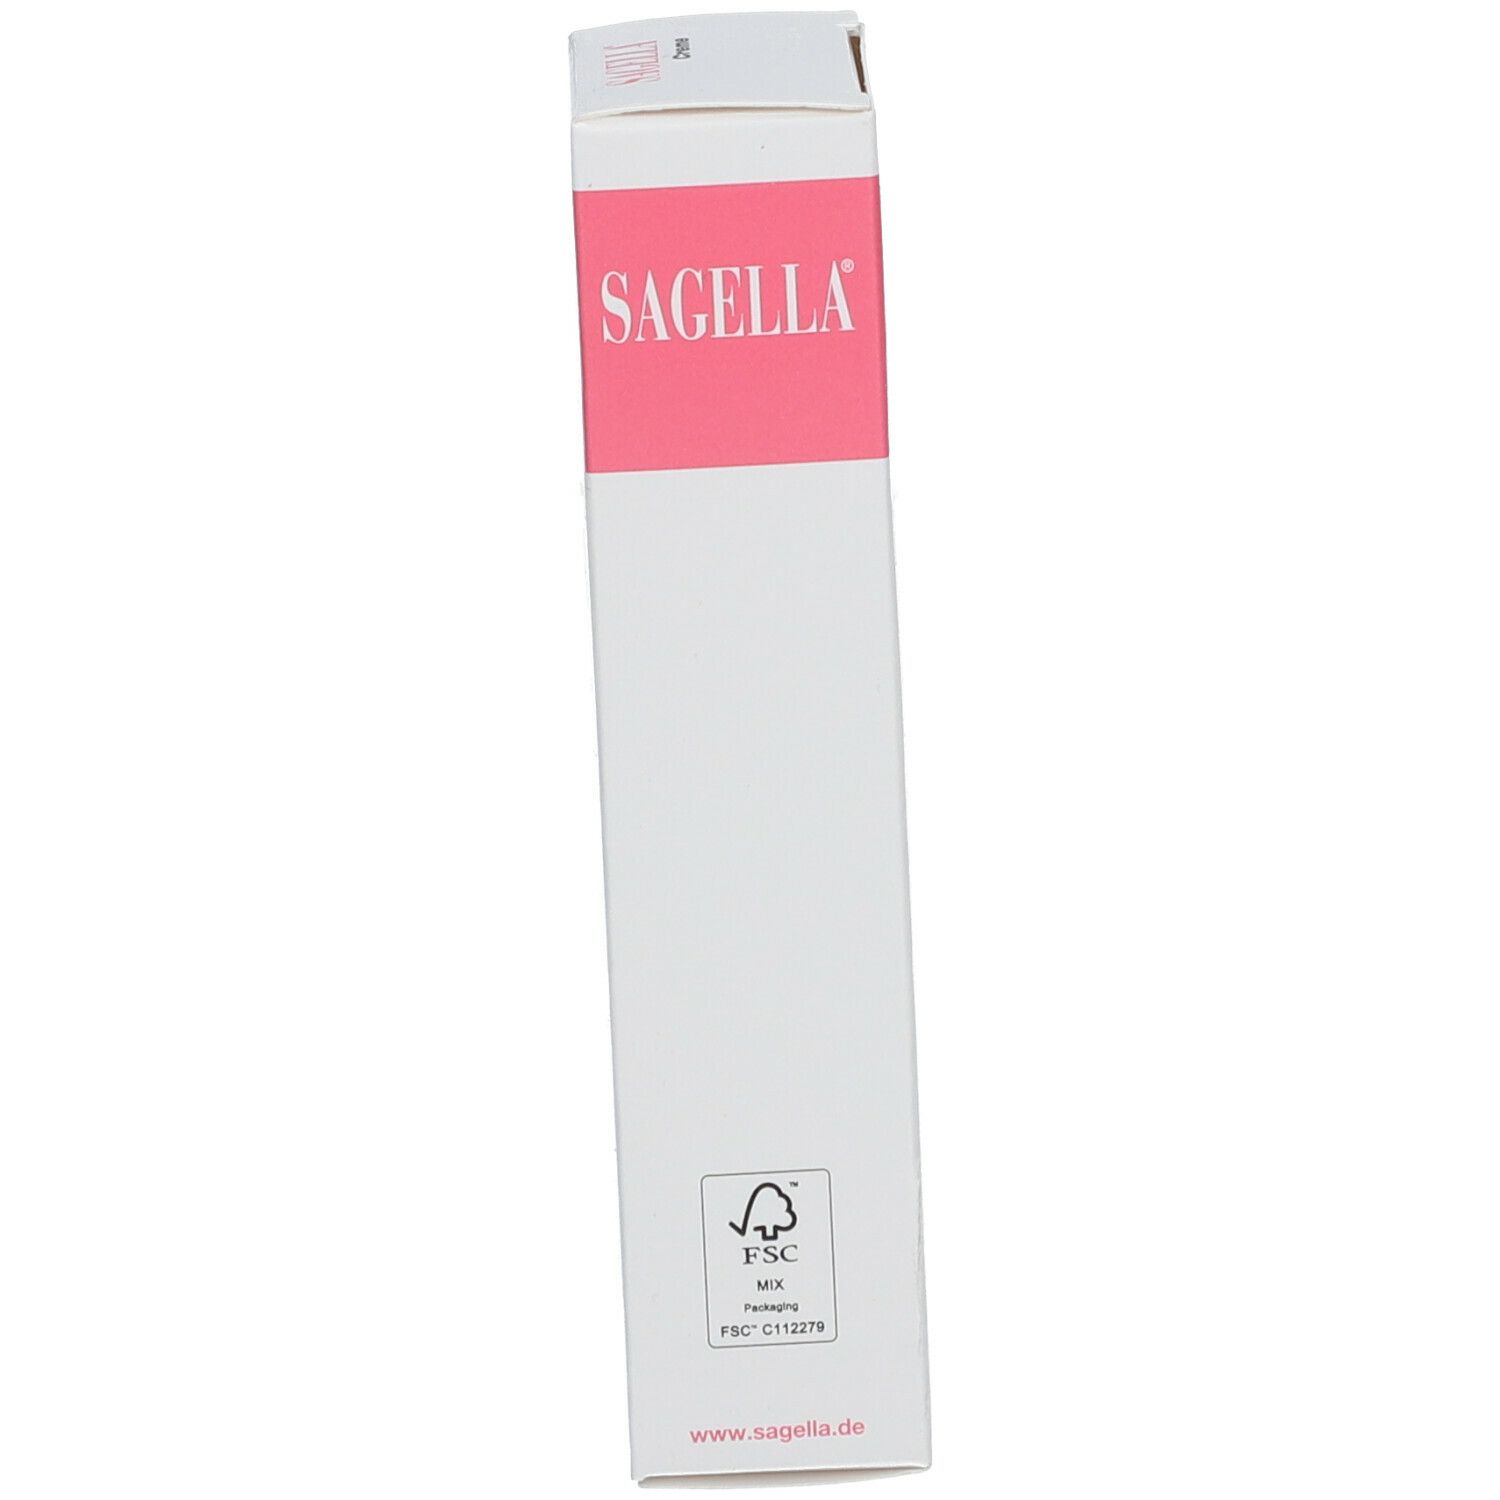 SAGELLA Creme: Feuchtigkeitscreme für die Intimpflege - bei Scheidentrockenheit